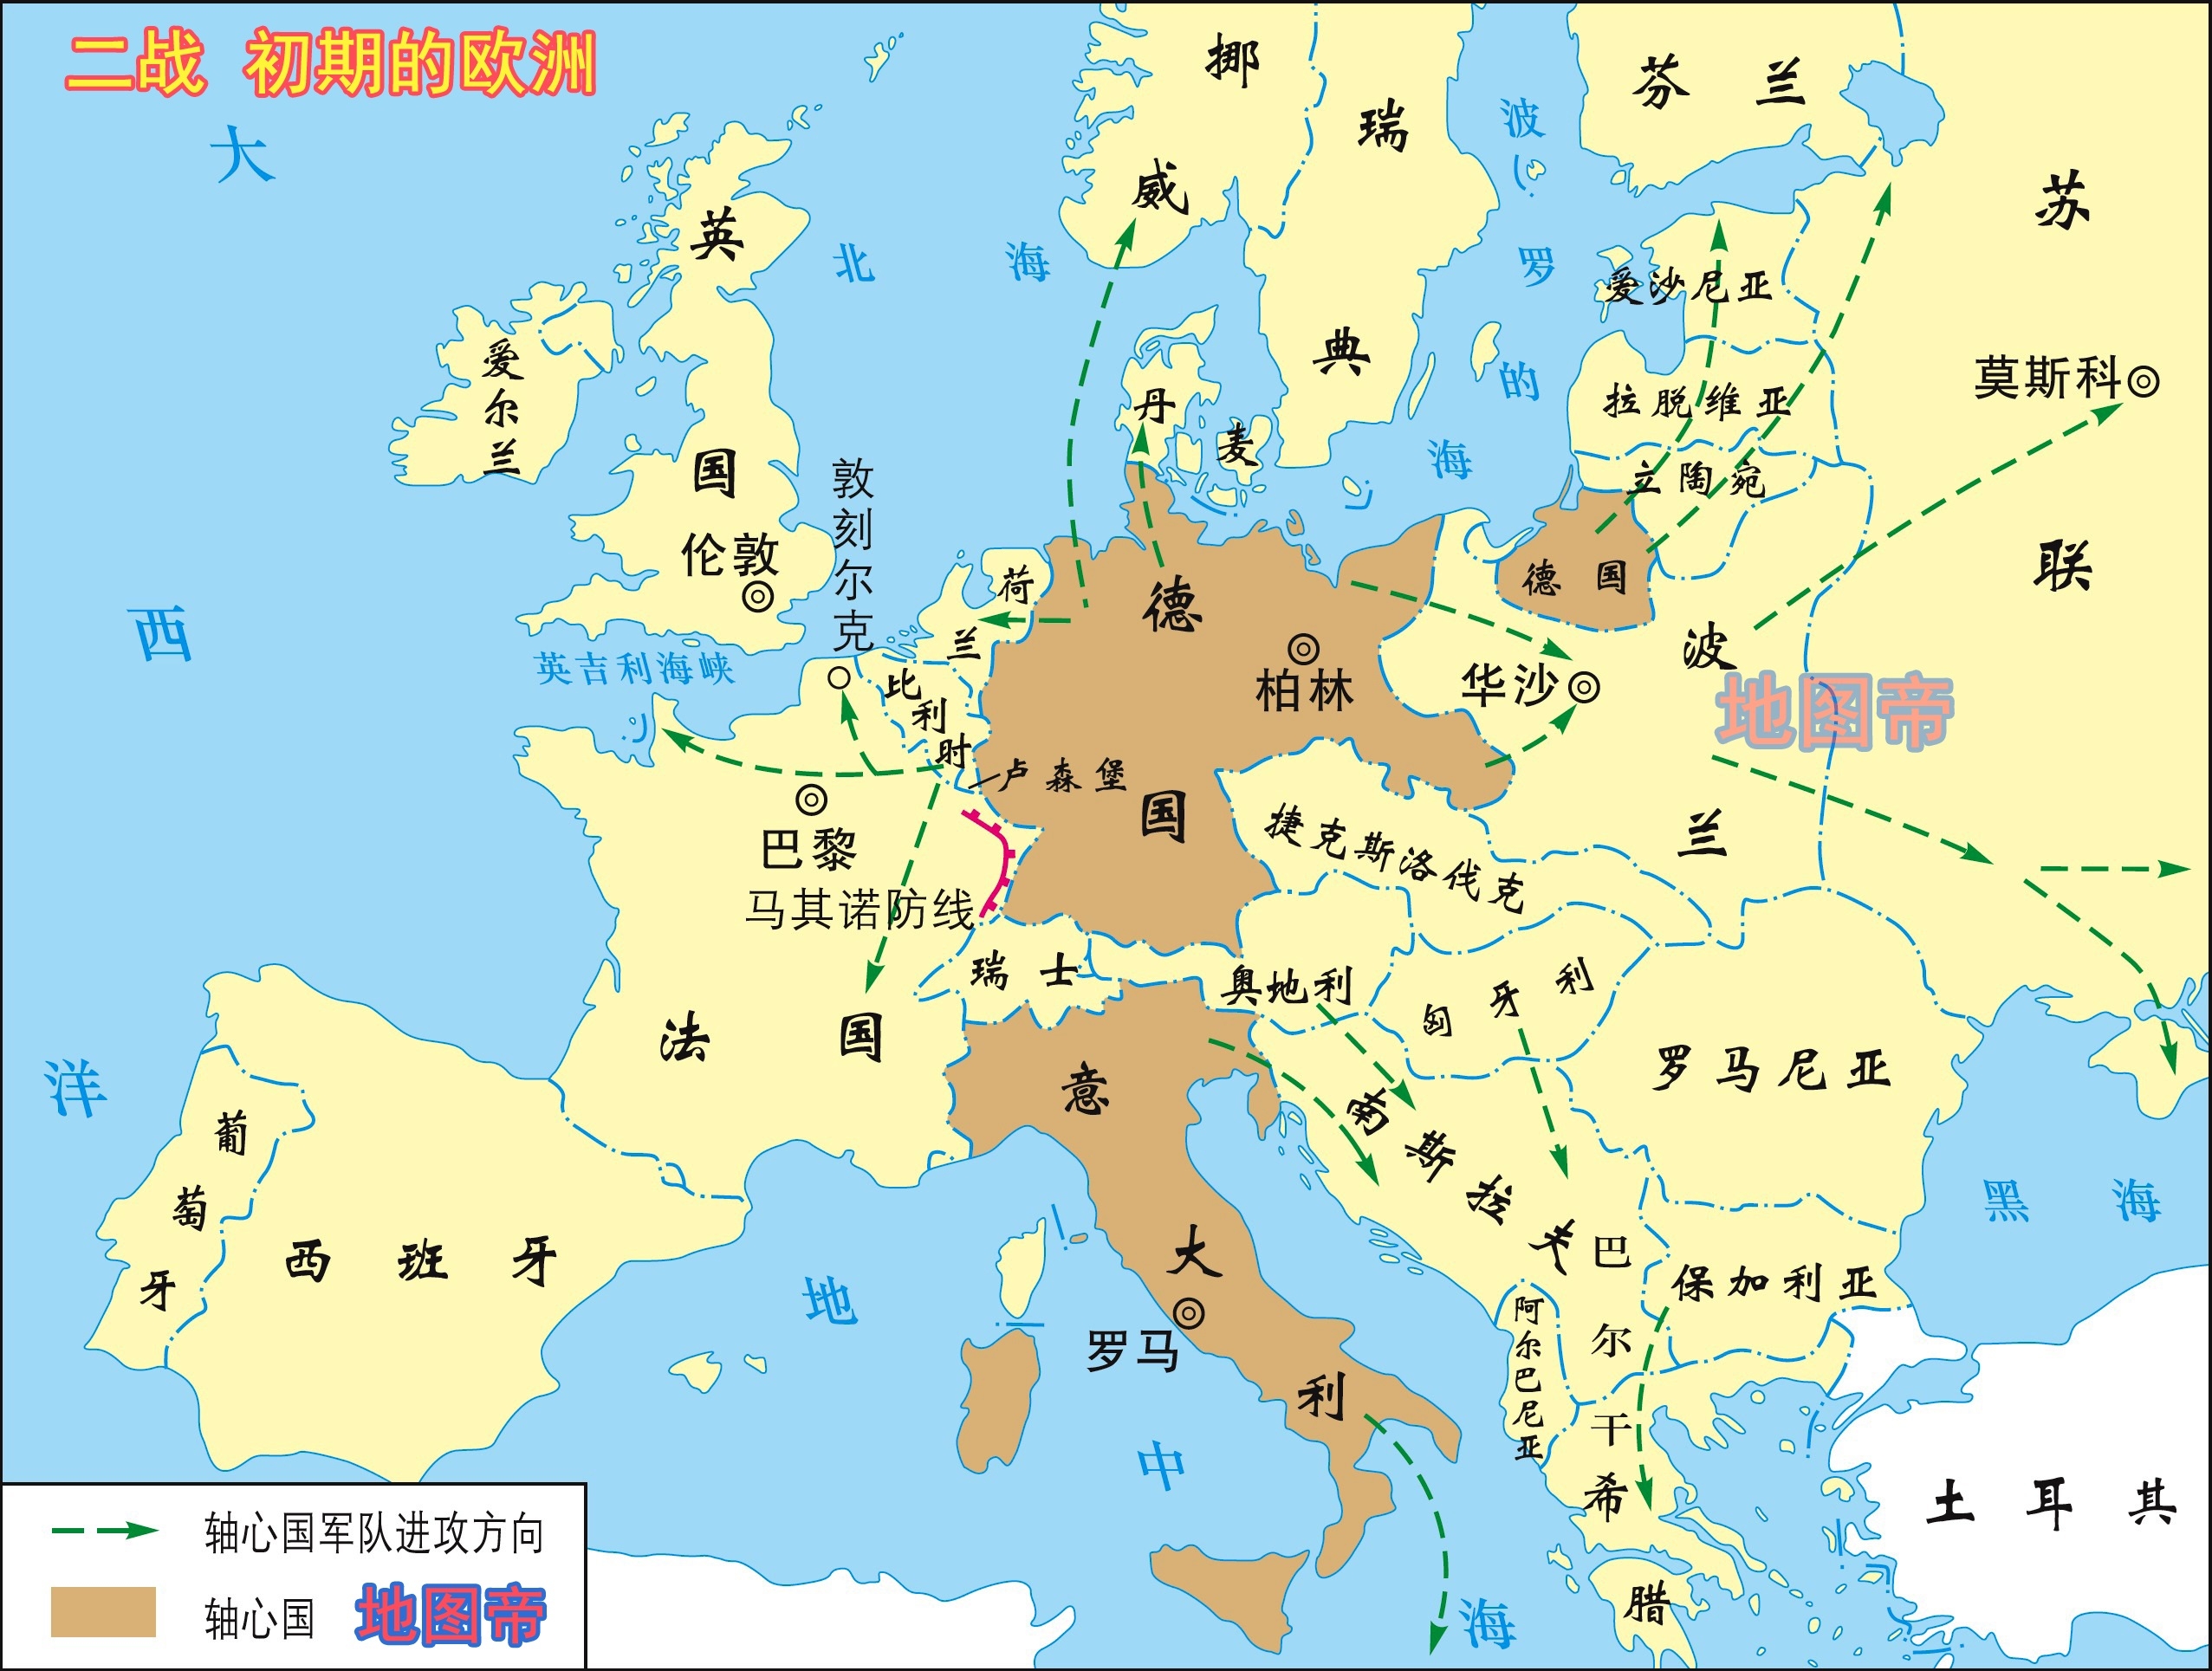 二战前后欧洲地图对比图片